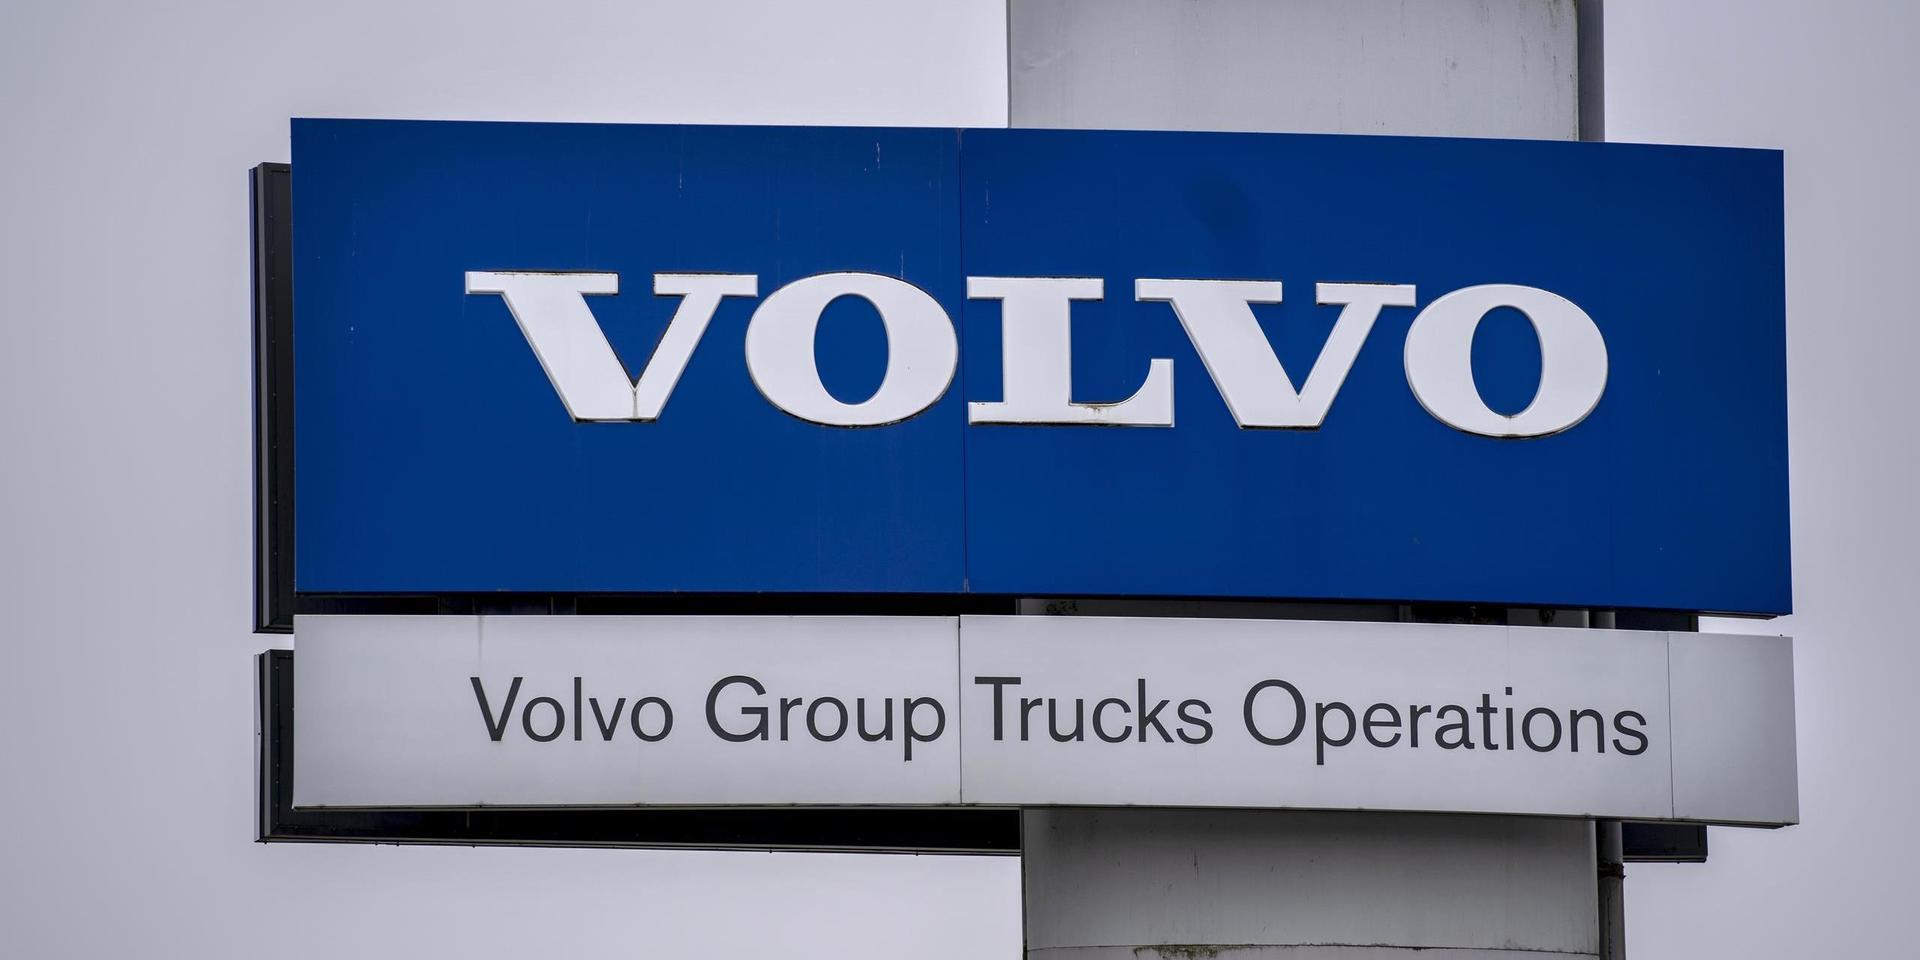 Konsulter som GP talat med, som jobbat många år åt Volvo, fick gå redan på måndagen efter beskedet i fredags.